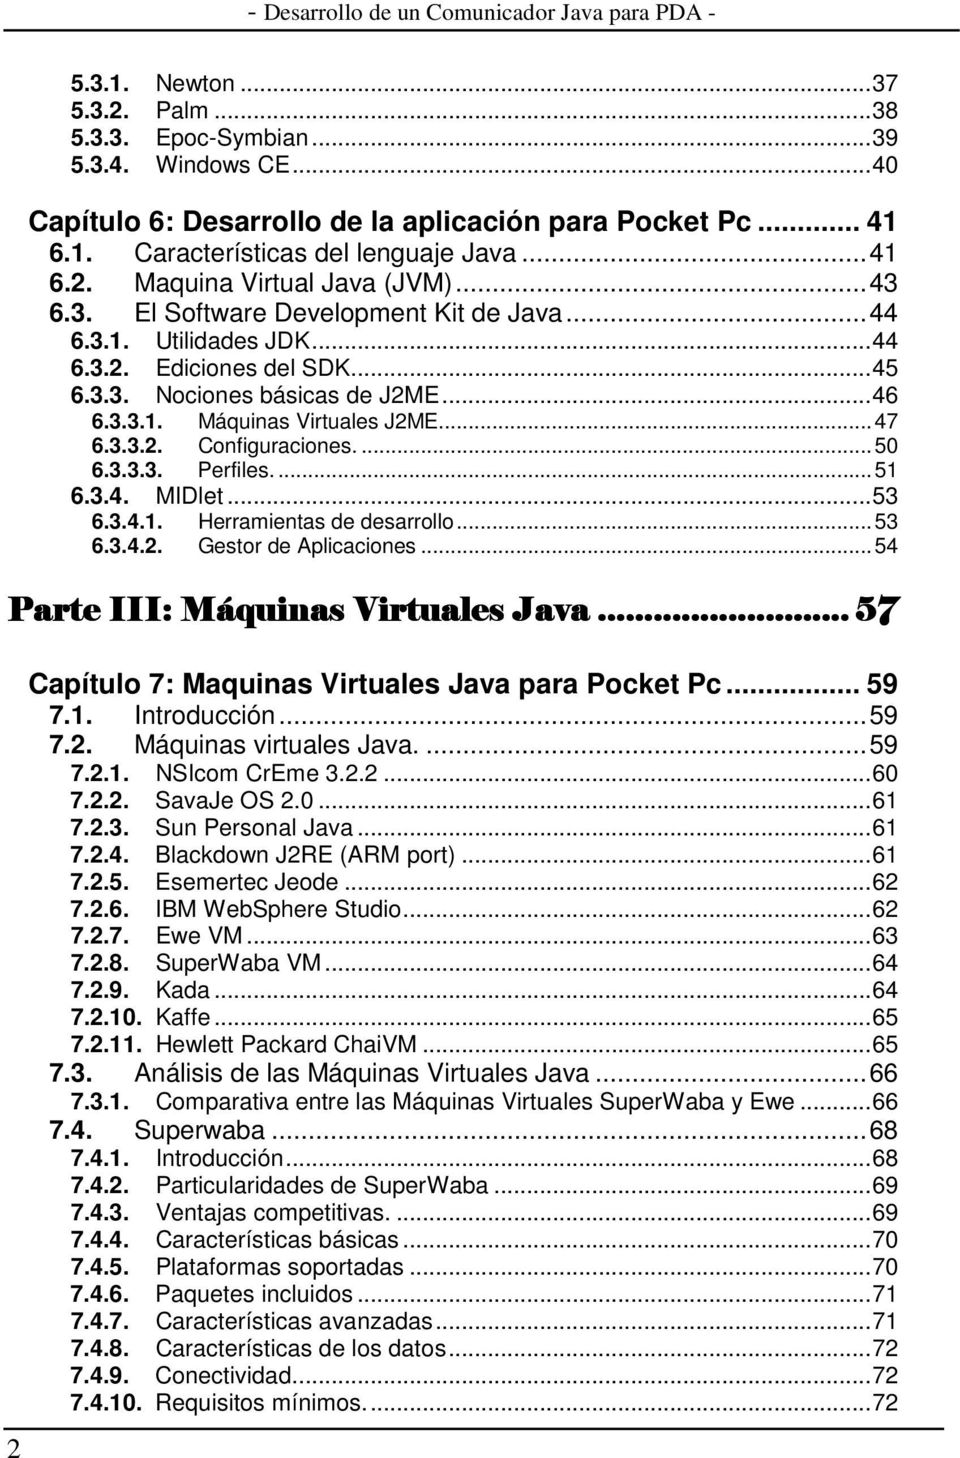 ...50 6.3.3.3. Perfiles....51 6.3.4. MIDlet...53 6.3.4.1. Herramientas de desarrollo...53 6.3.4.2. Gestor de Aplicaciones...54 Parte III: Máquinas Virtuales Java.